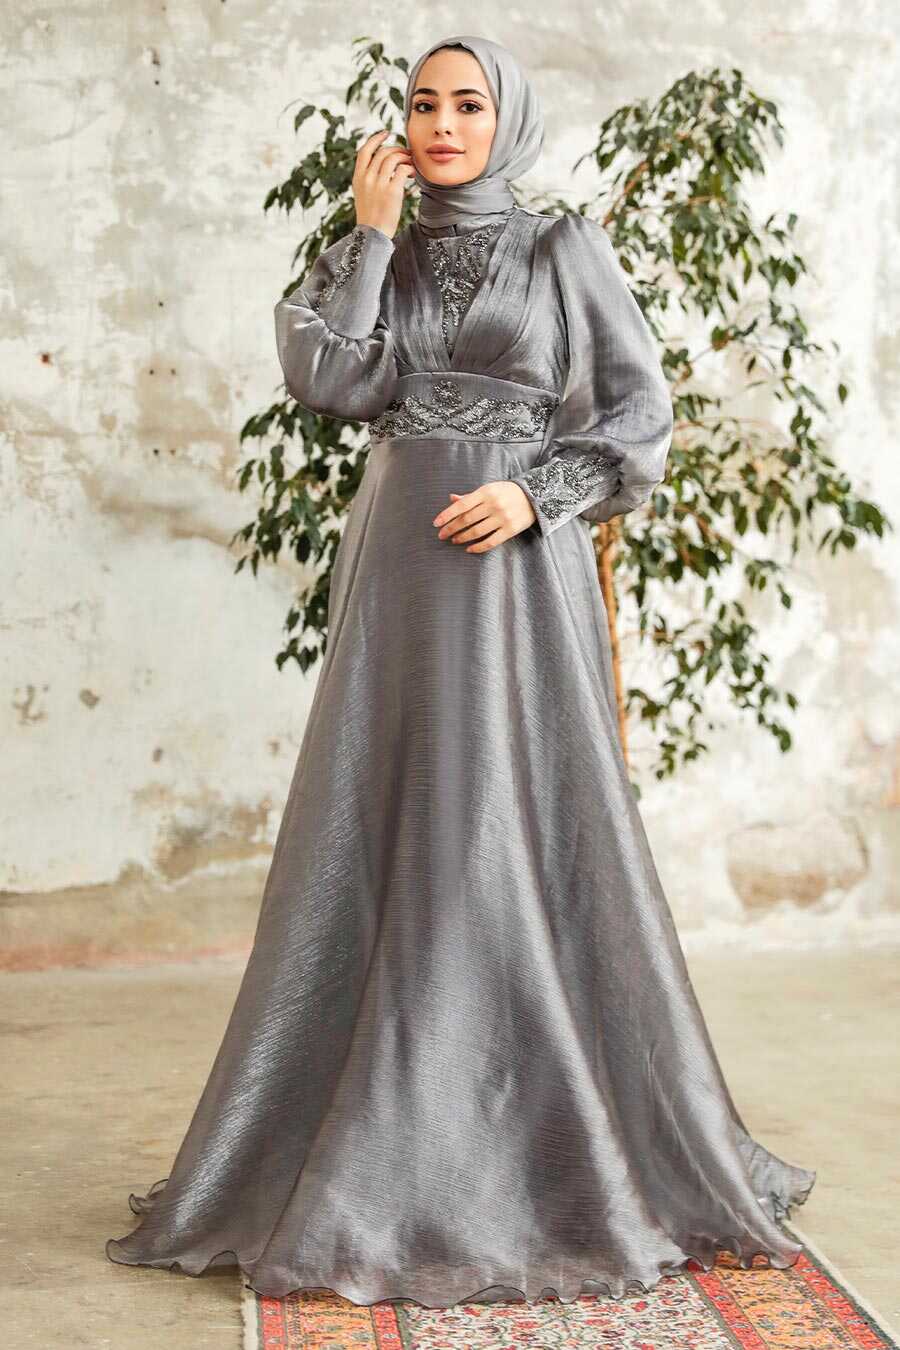 Neva Style - Stylish Grey Modest Islamic Clothing Prom Dress 3753GR